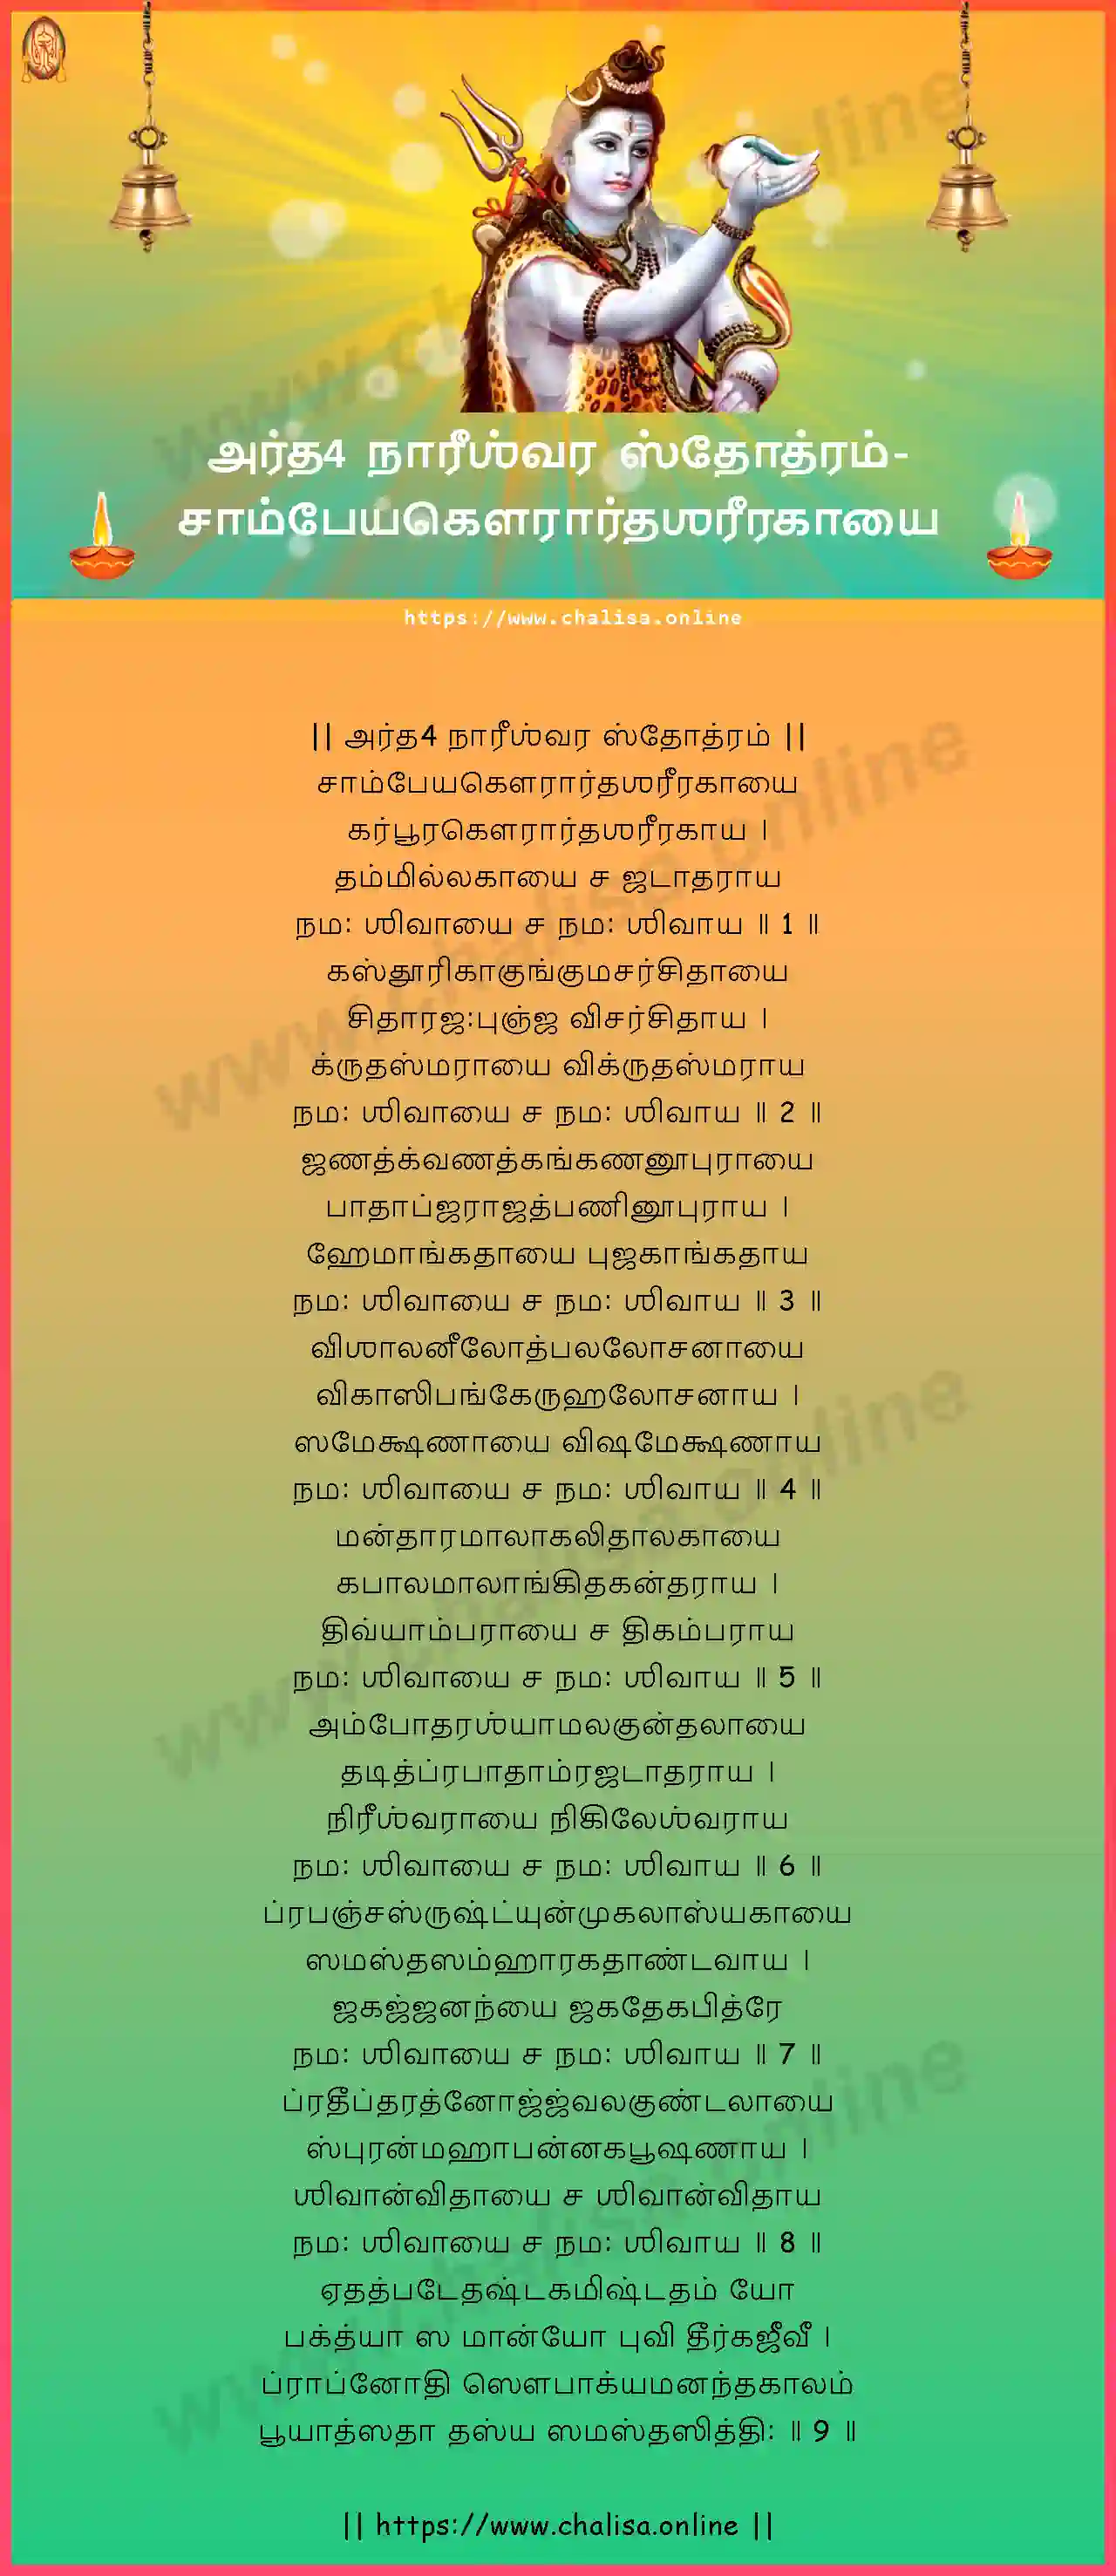 champeyagaurardhasarirakayai-ardha-nareeswara-stotram-tamil-tamil-lyrics-download